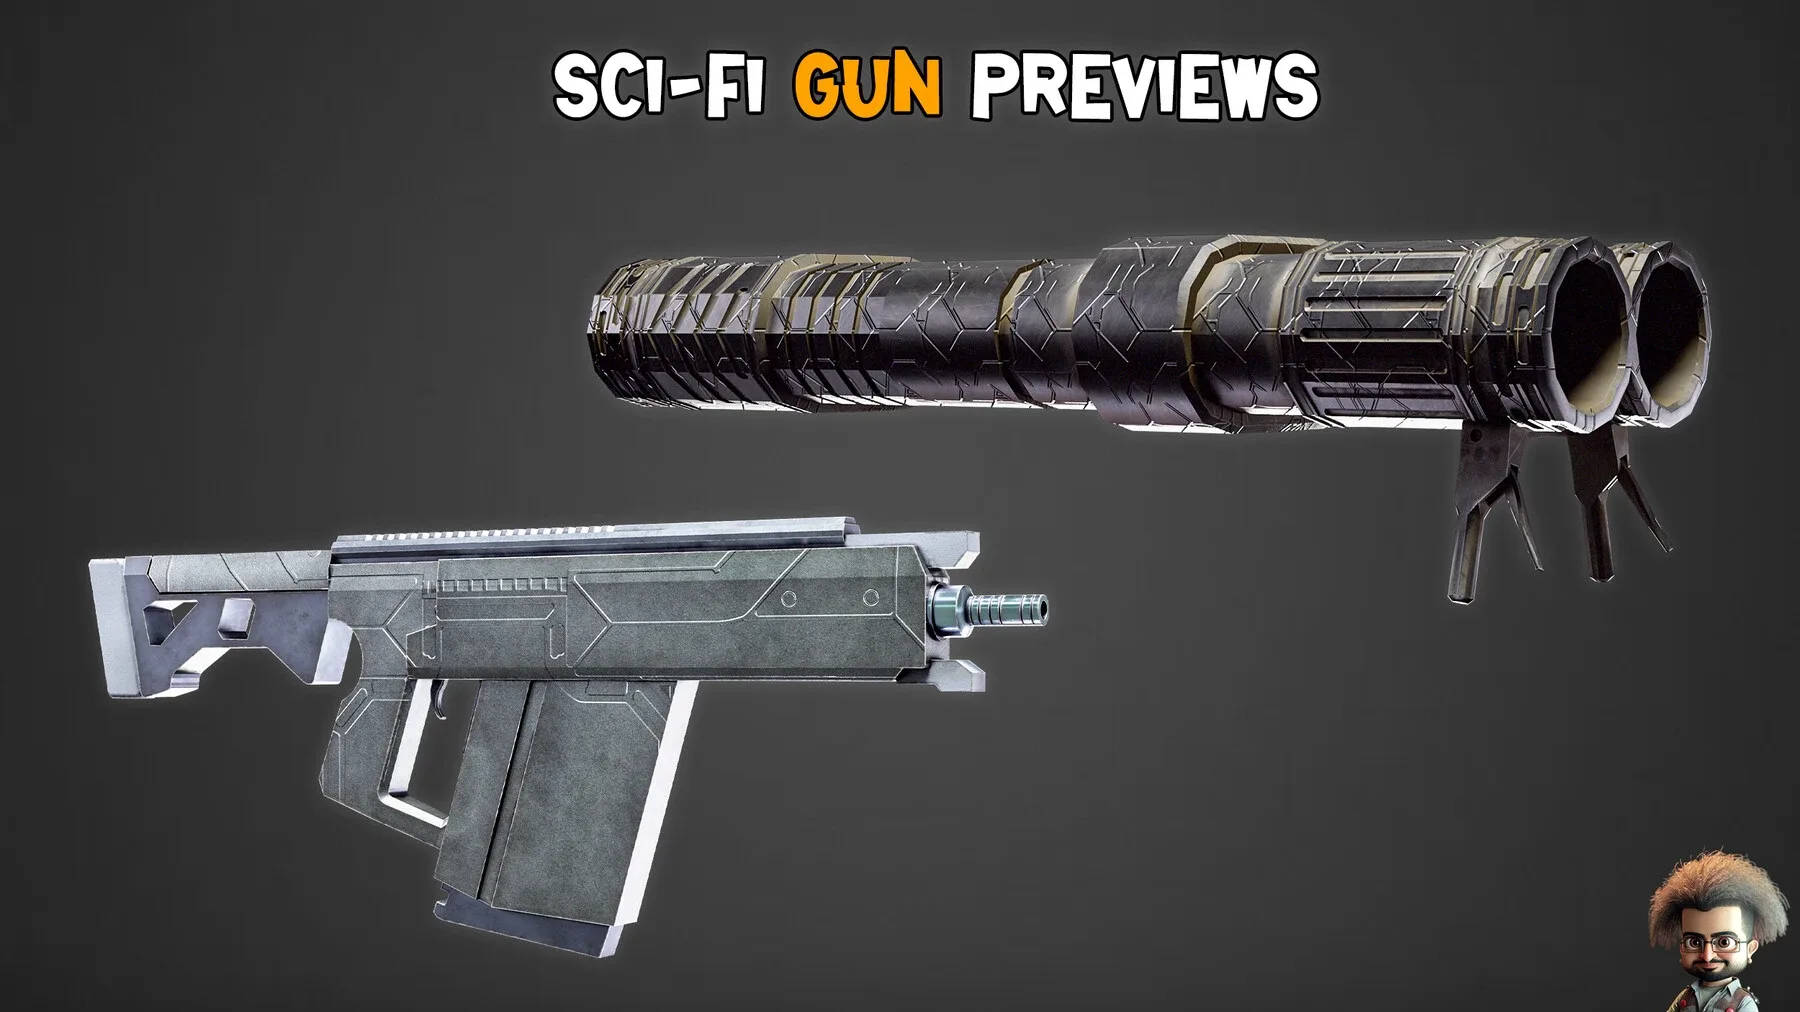 30 HQ Sci-Fi Gun + 4K Texture - Vol 02